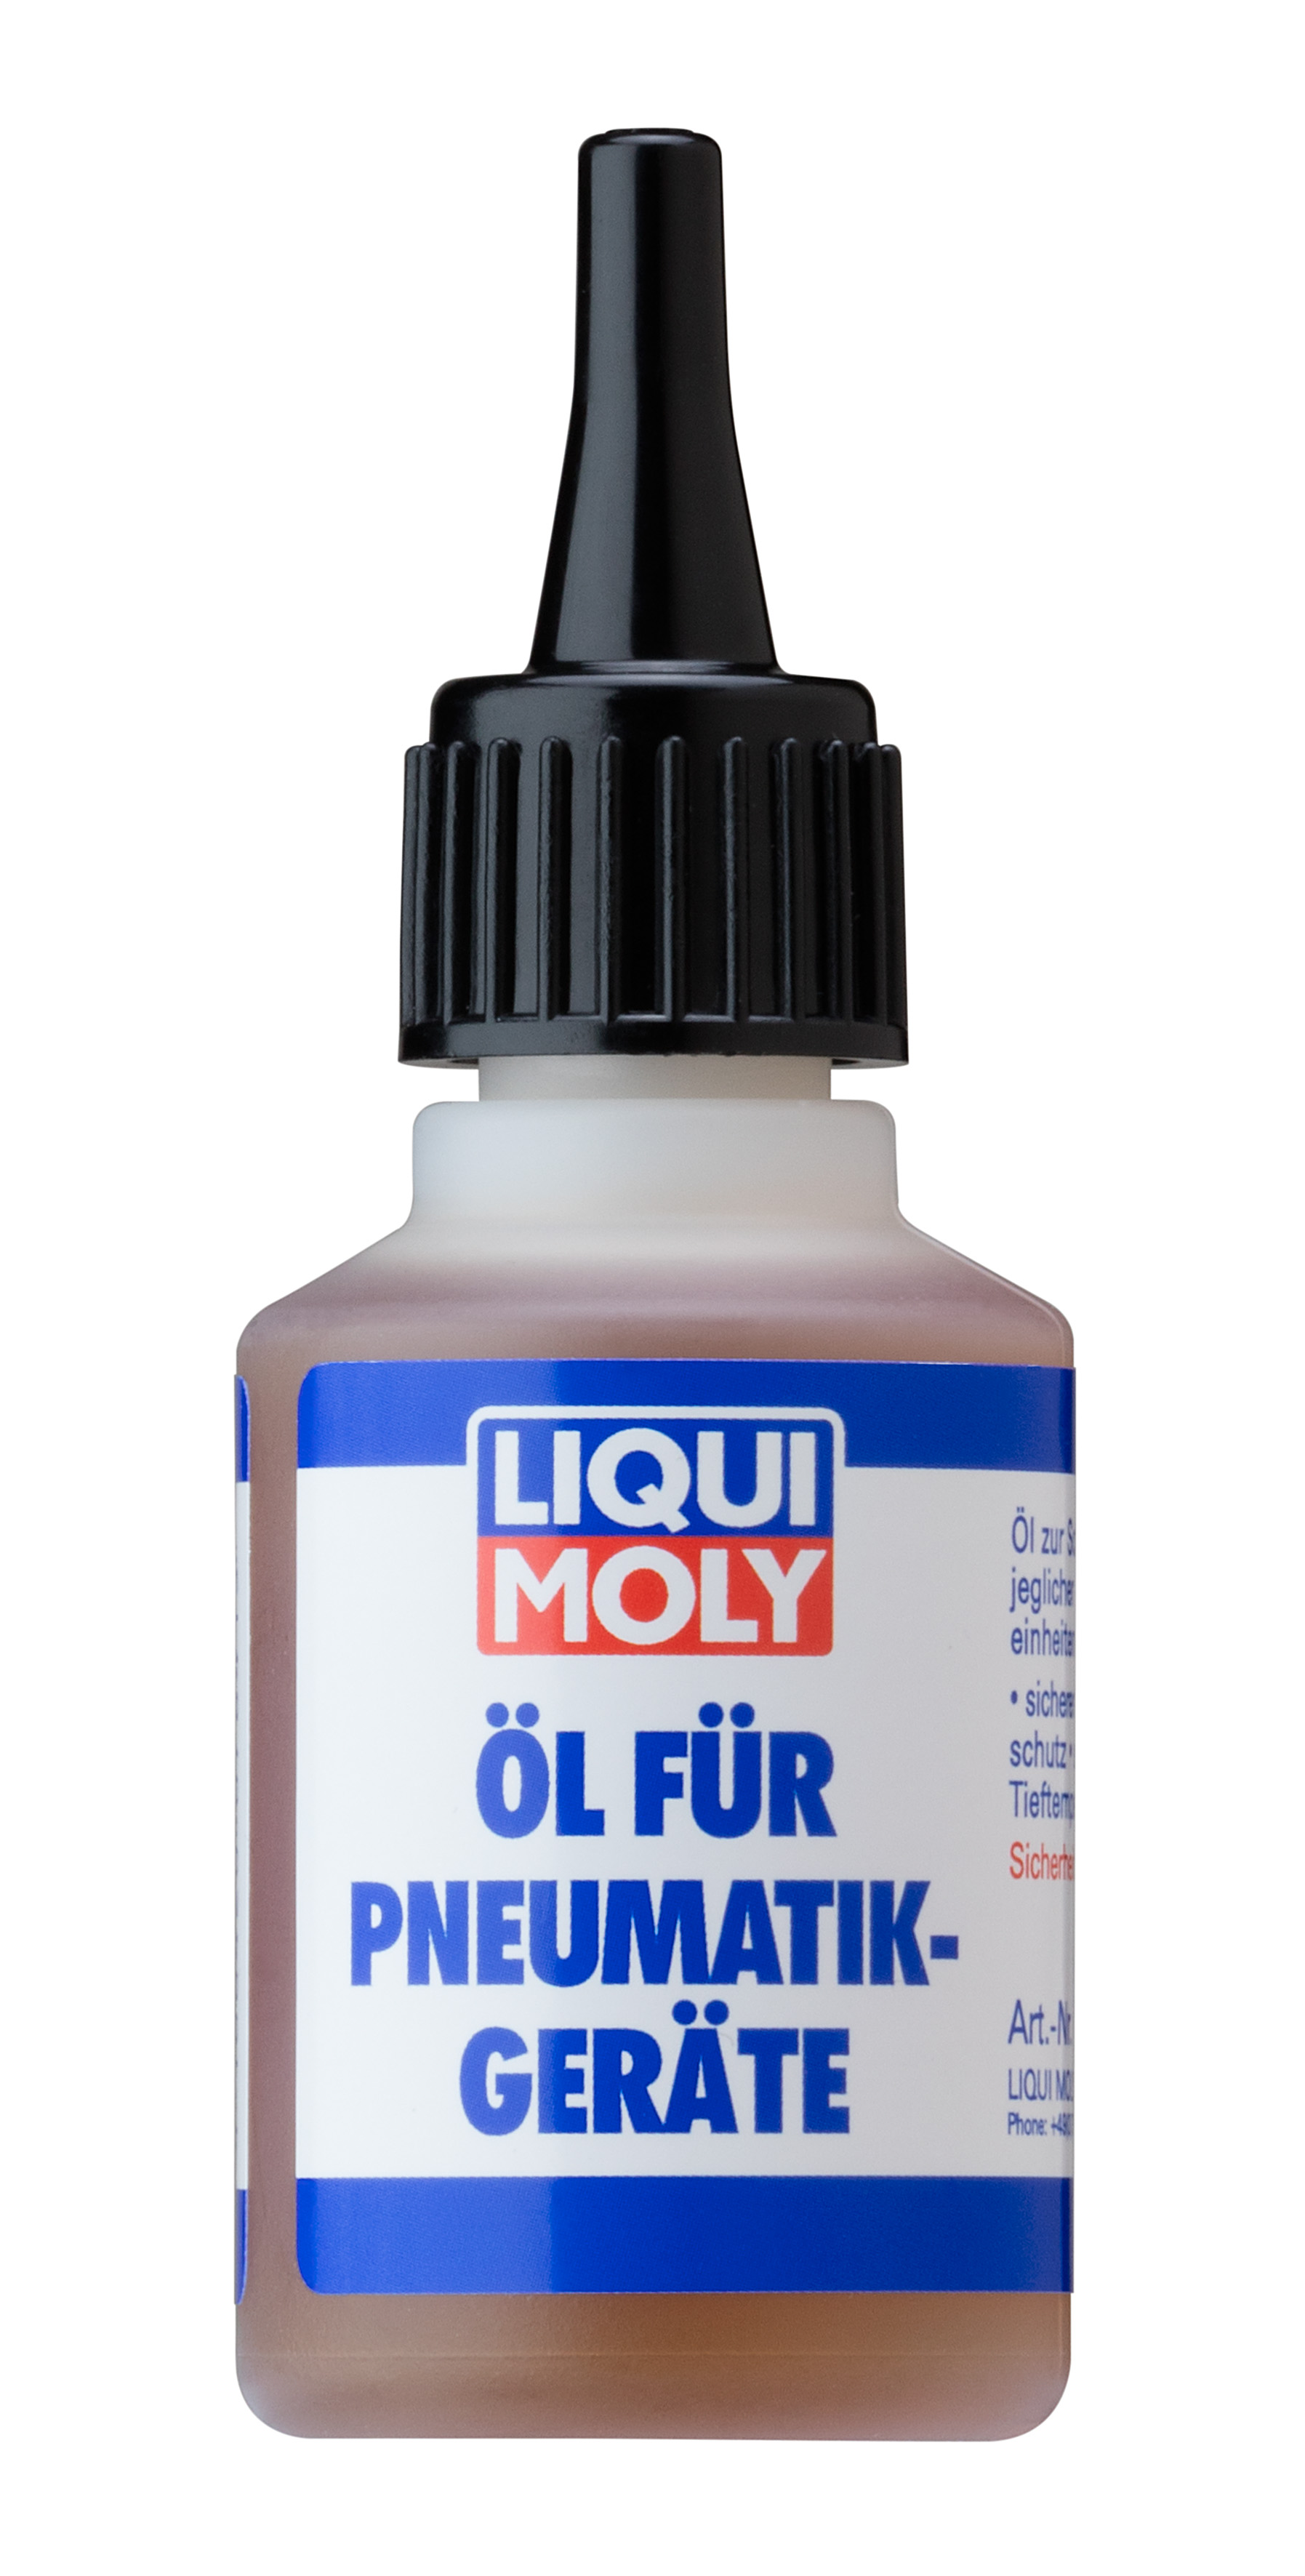 LM Oil fur Pneumatikgerate Масло д/пневмоинструмента (0.5L)